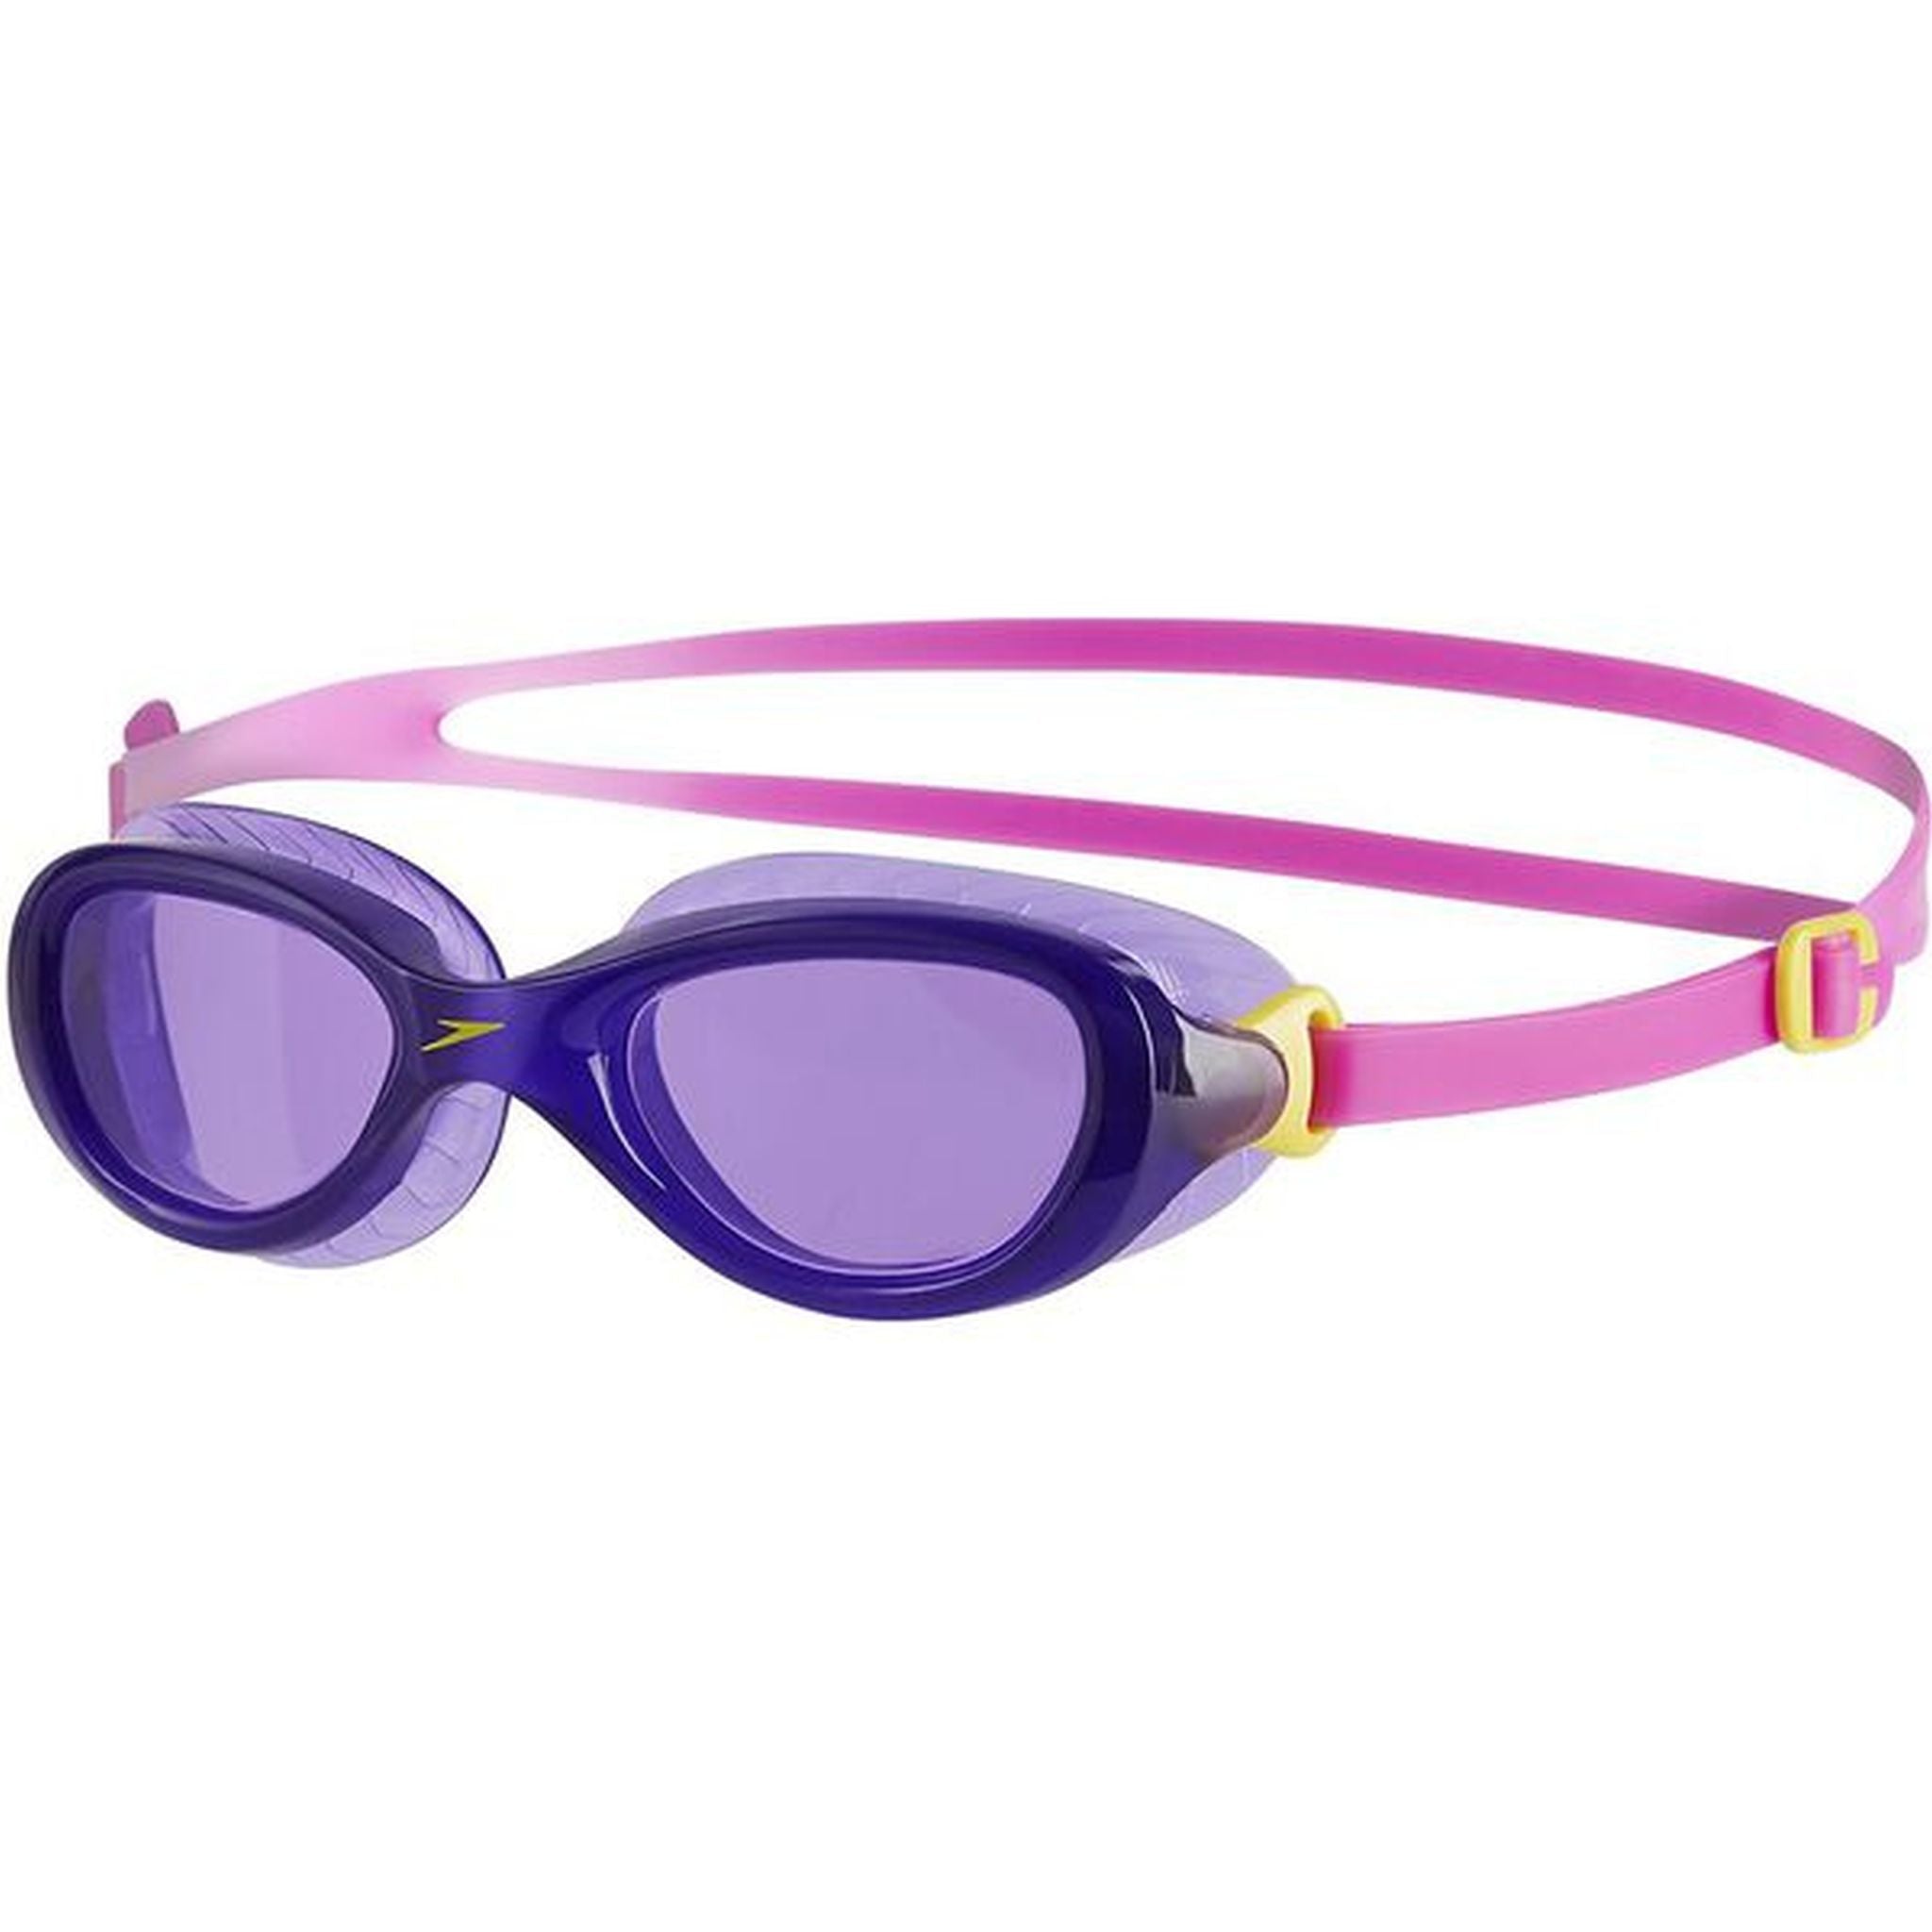 Speedo Futura Classic Junior Goggles